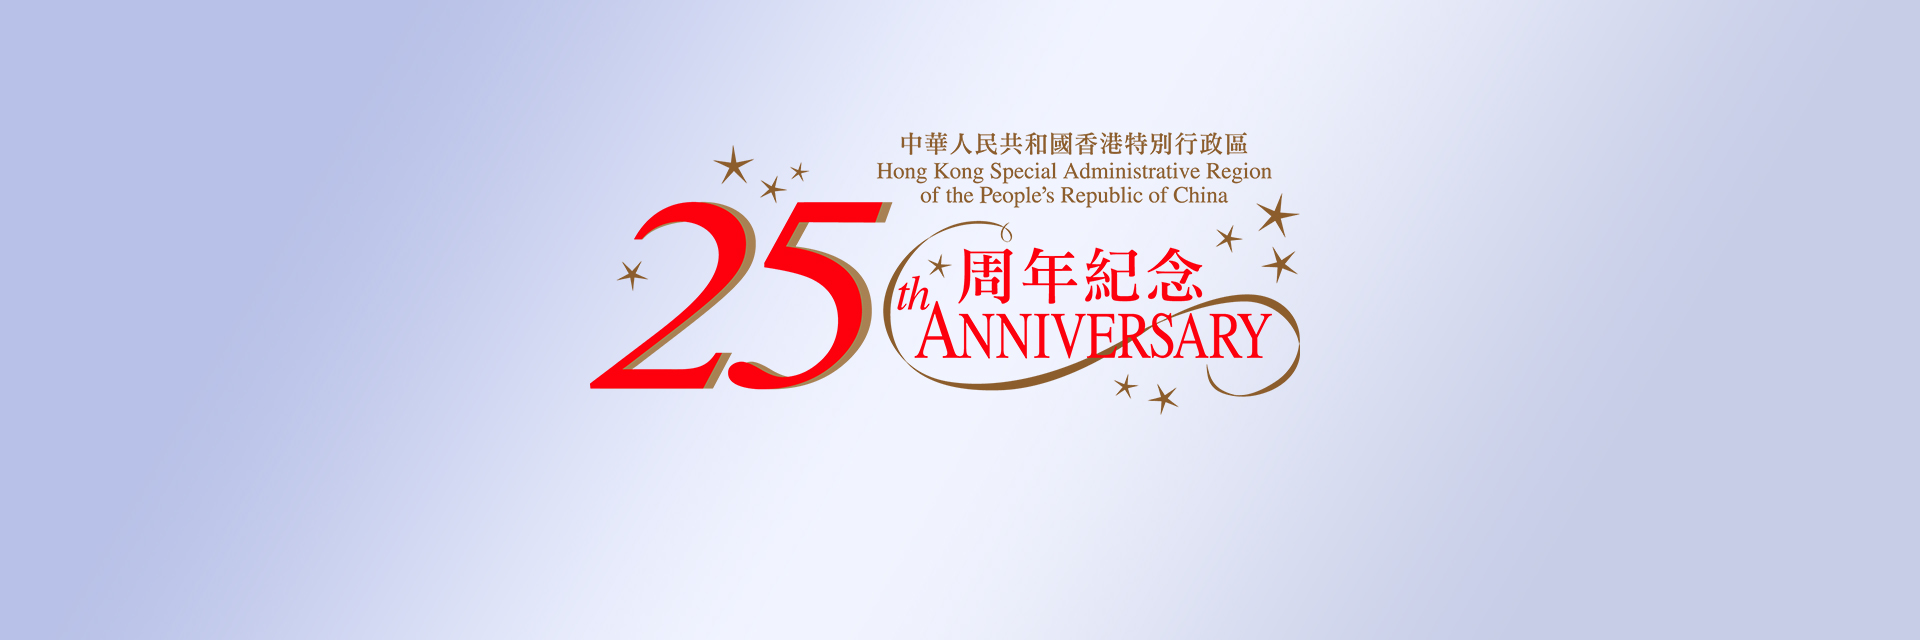 慶祝香港特別行政區成立25周年